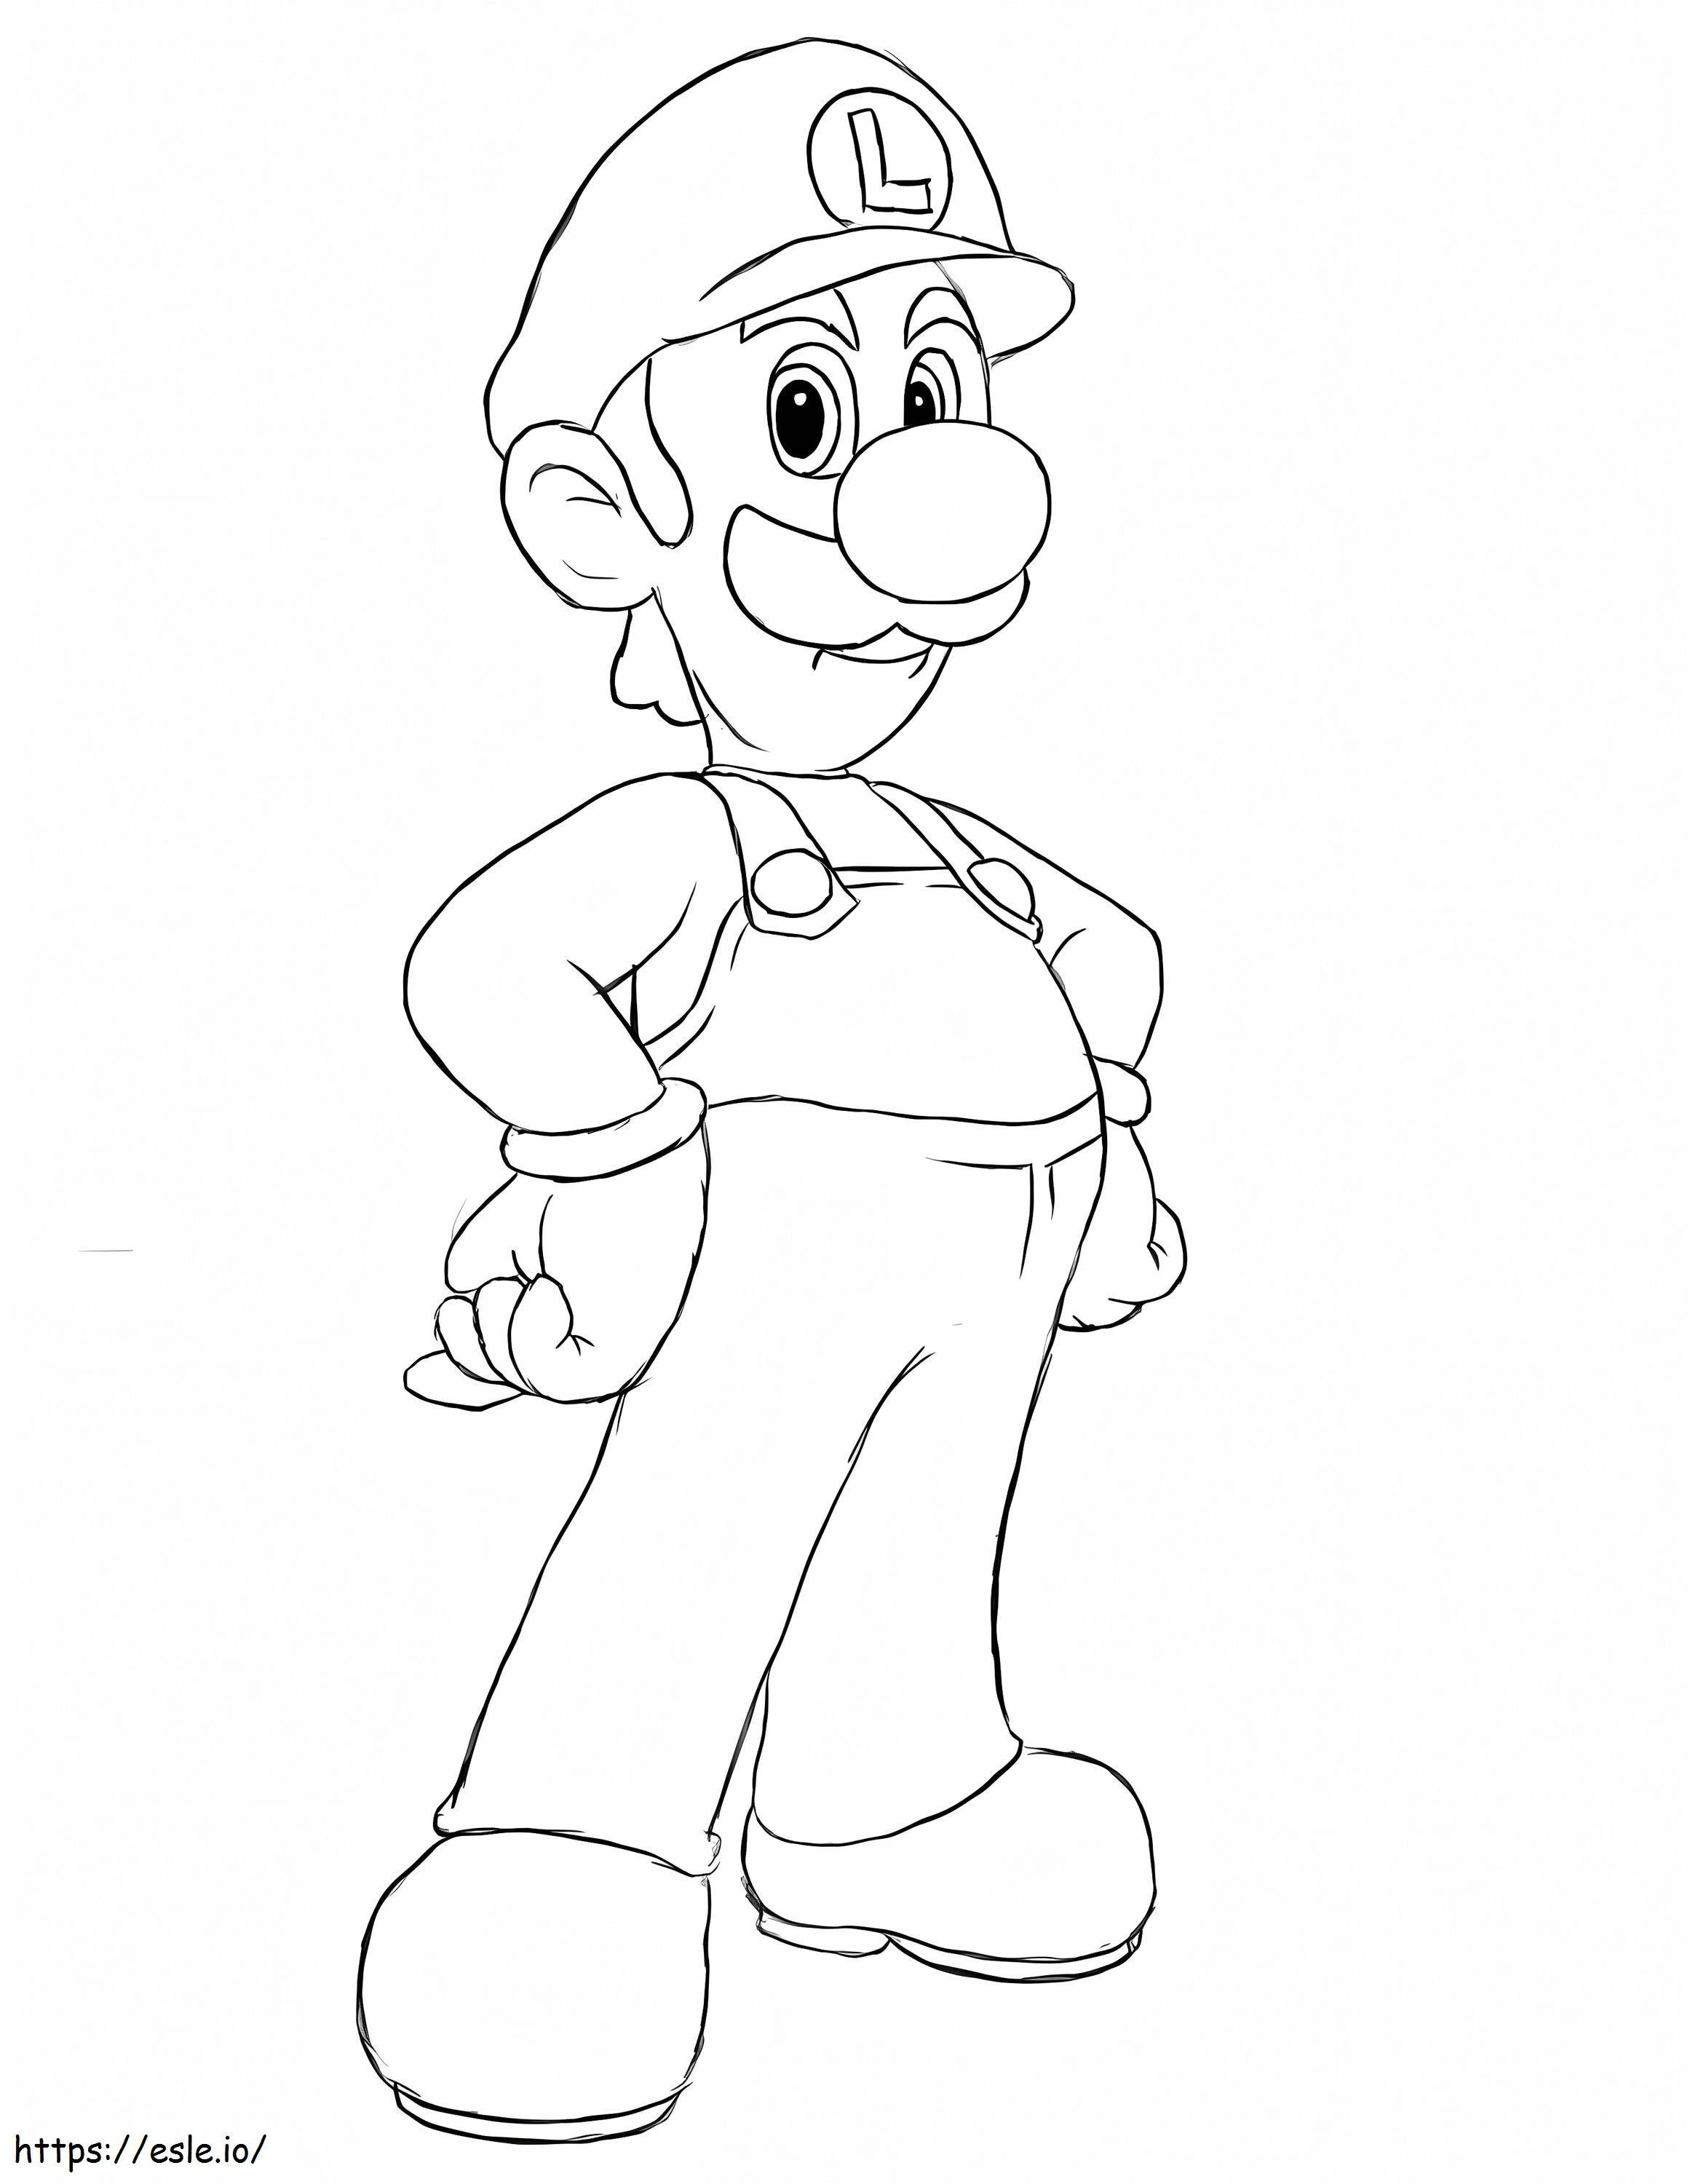 Louis De Super Mario 4 ausmalbilder